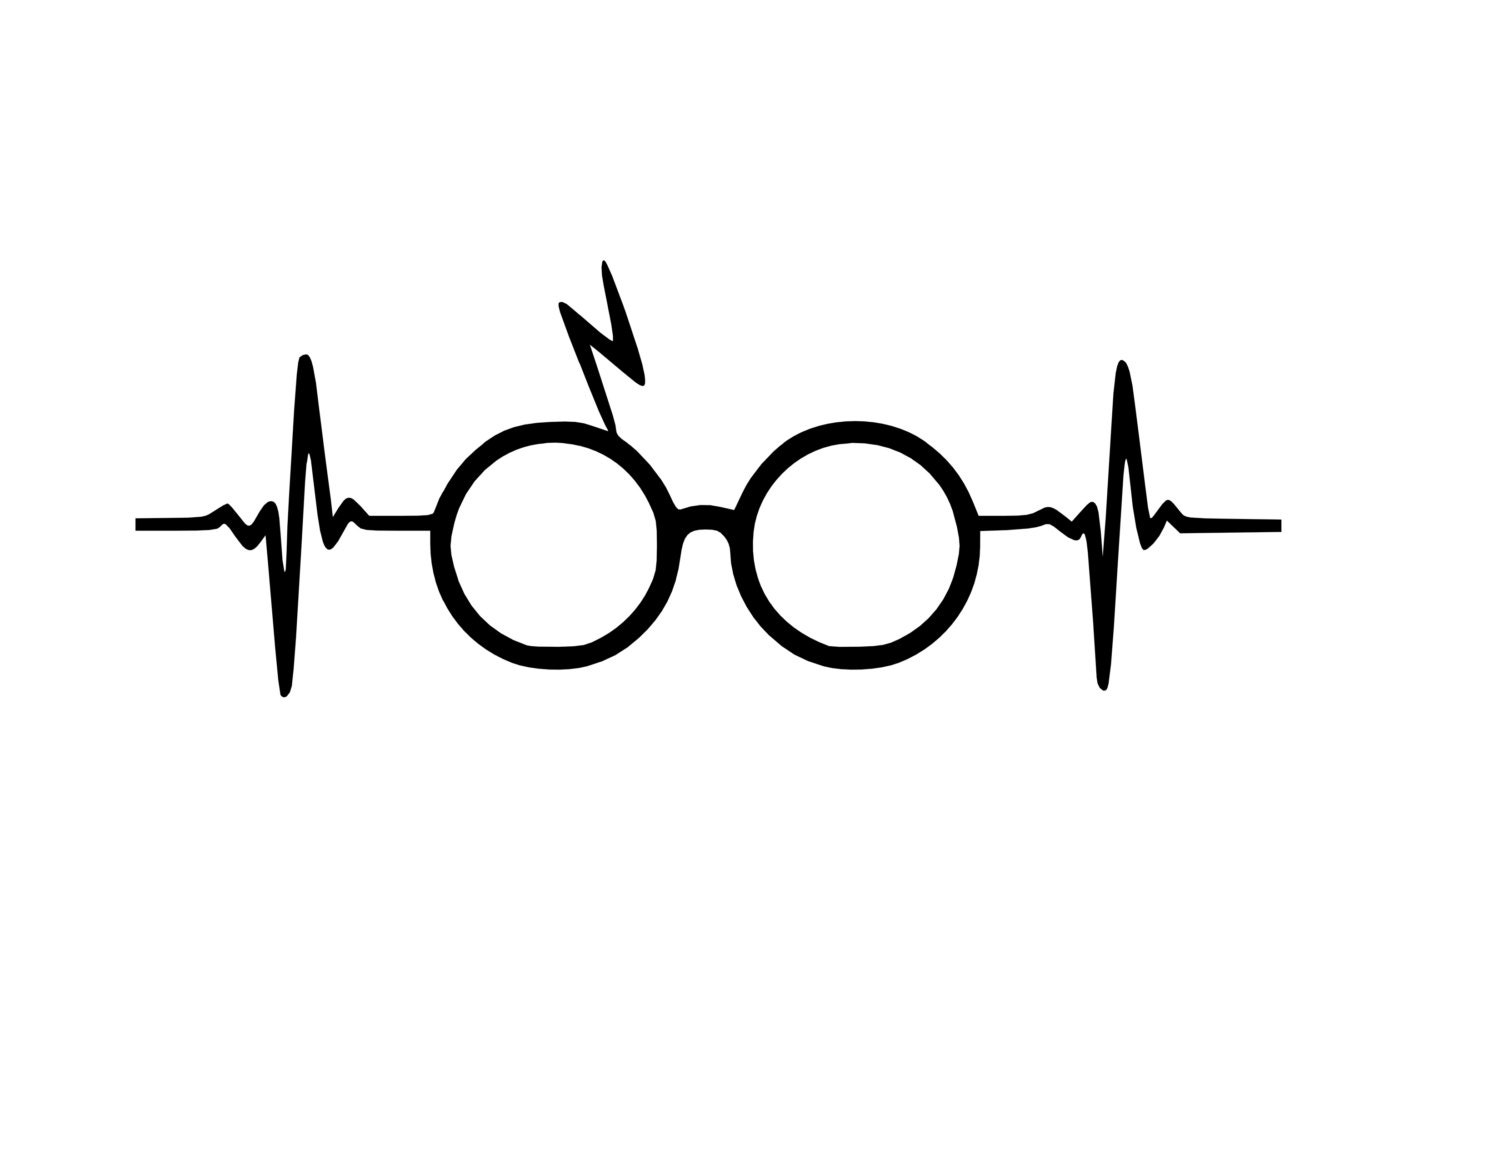 Free SVG Harry Potter Svg Heart 19937+ File for DIY T-shirt, Mug